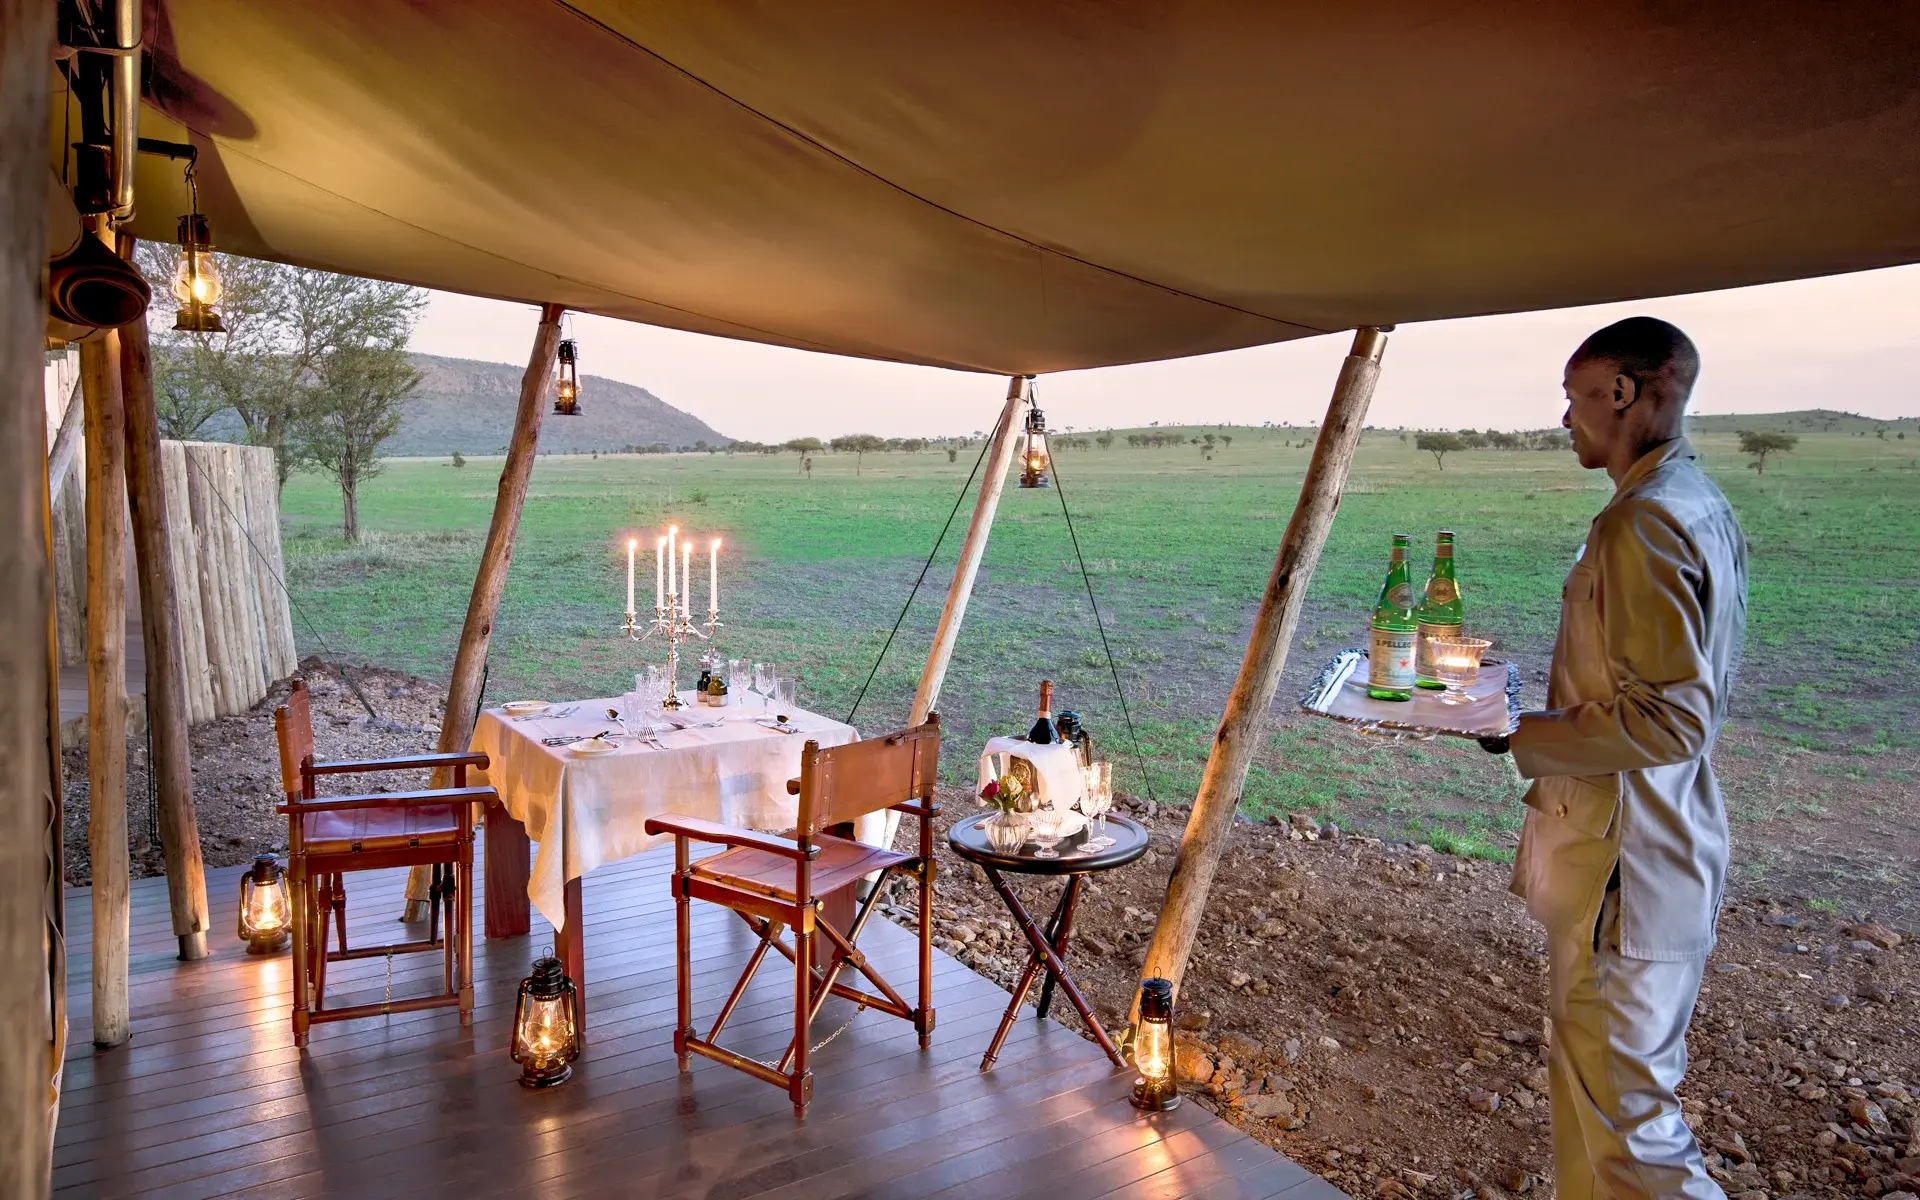 Romantic private dinner or celebration in Serengeti